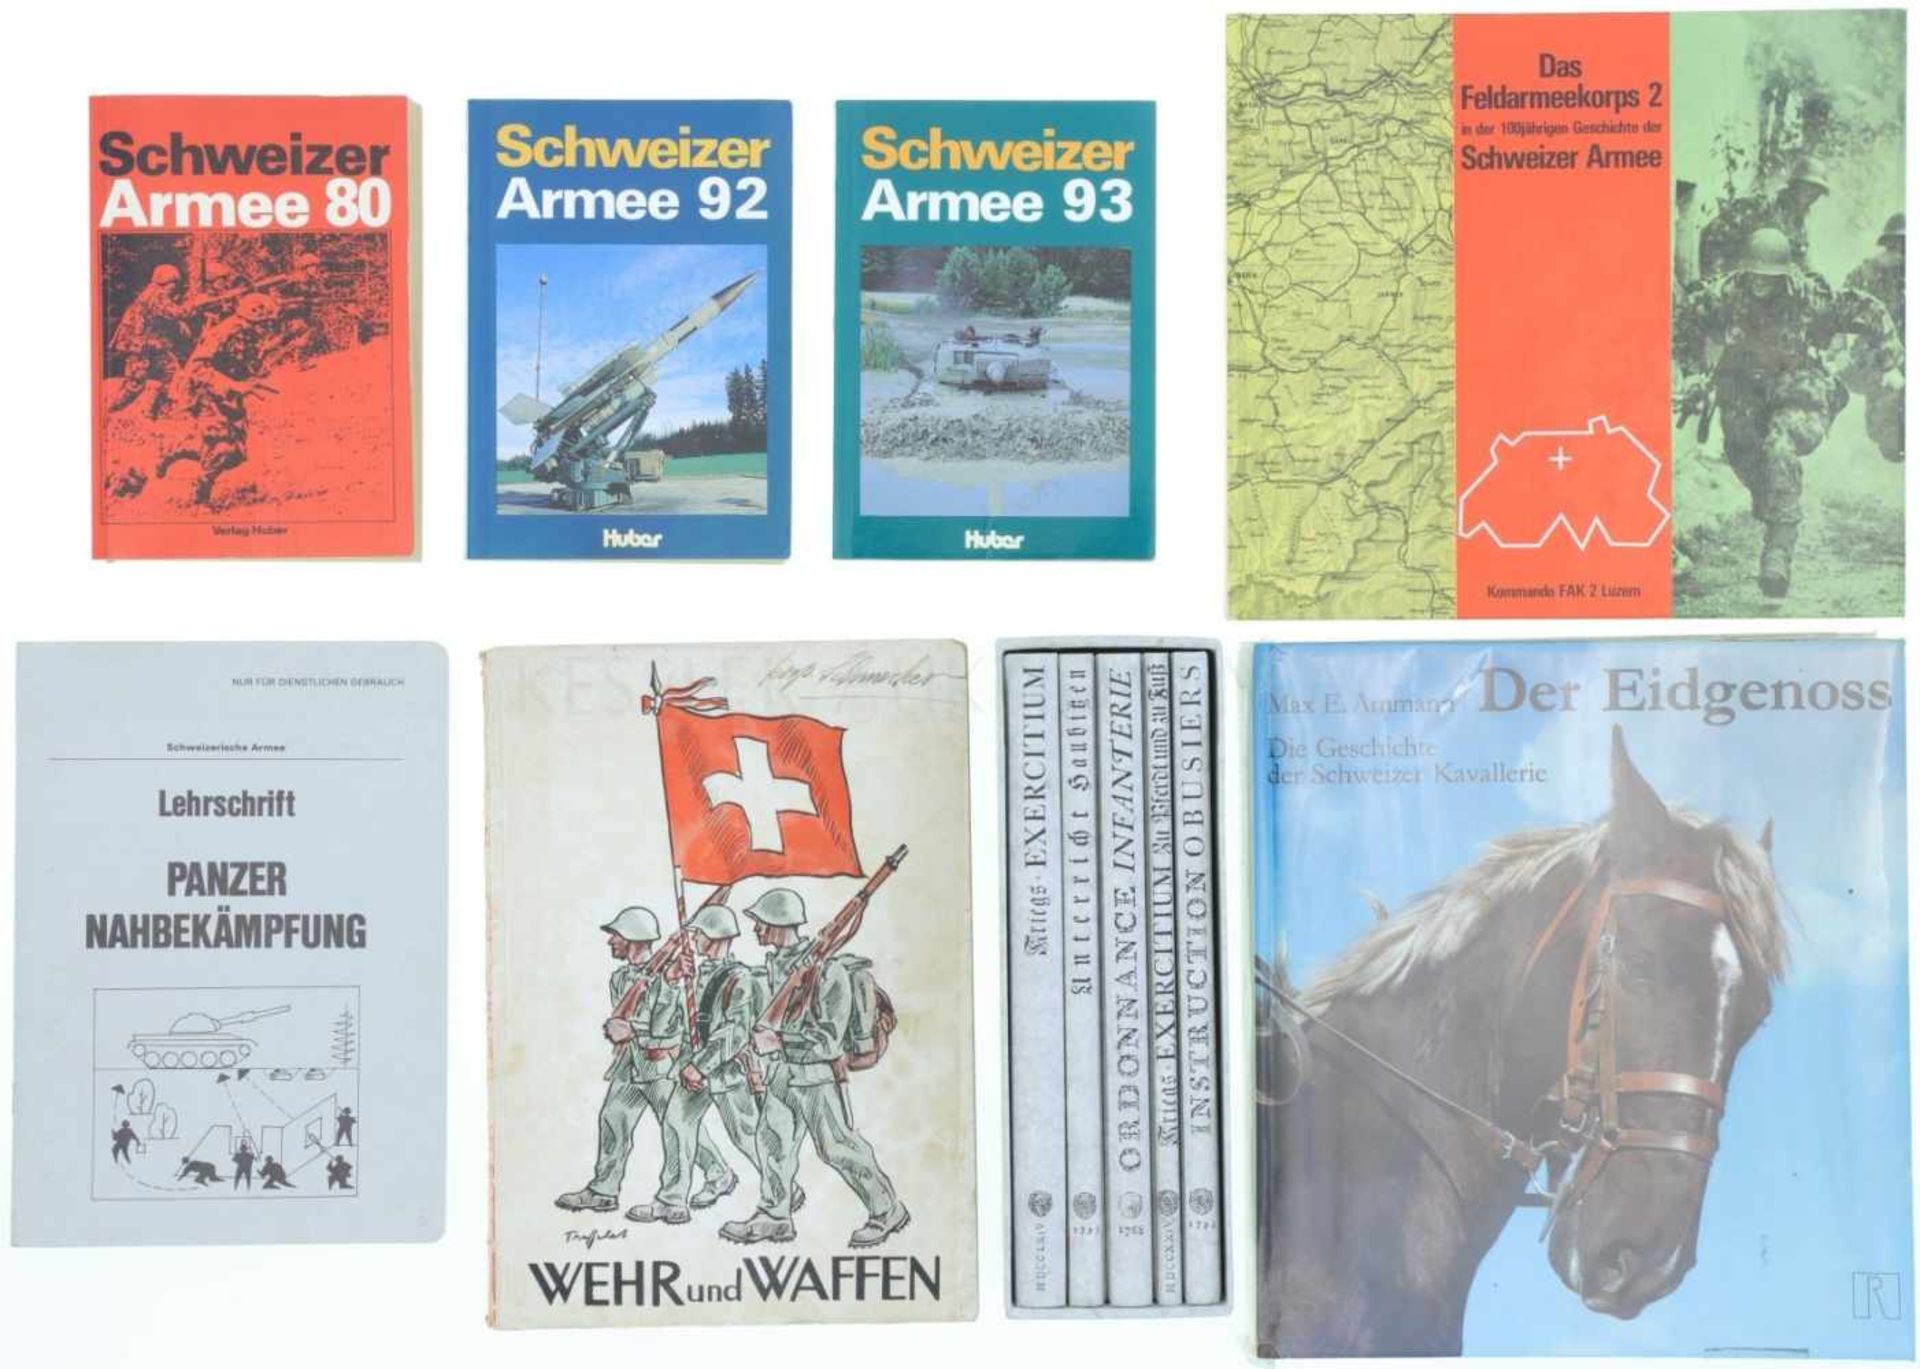 Konvolut 8 Bücher 1. Schweizer Armee 80, Autor Peter Marti, Verlag Huber, 1979. 2. Schweizer Armee